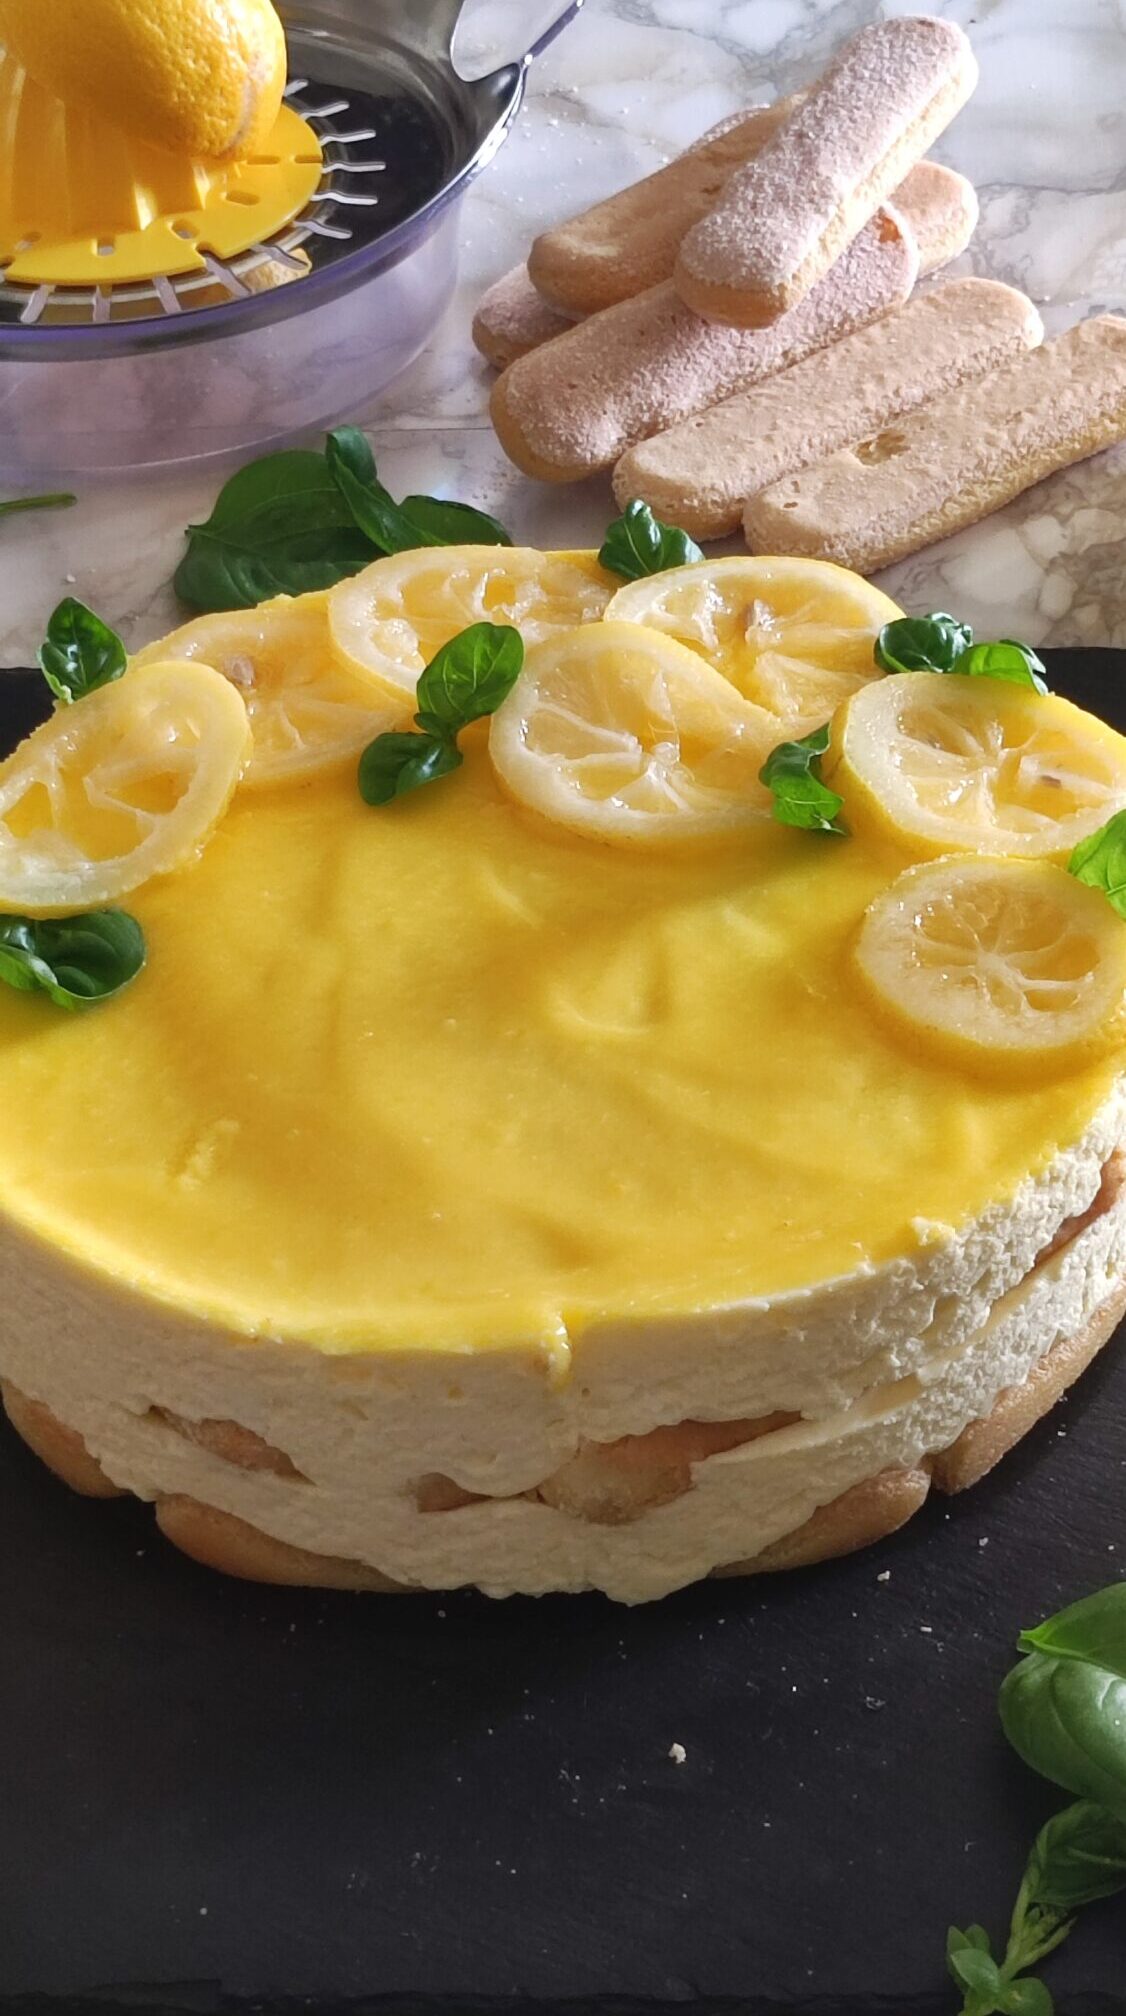 Tiramisù al limone: una ricetta freschissima da salvatre e condividere con tutti